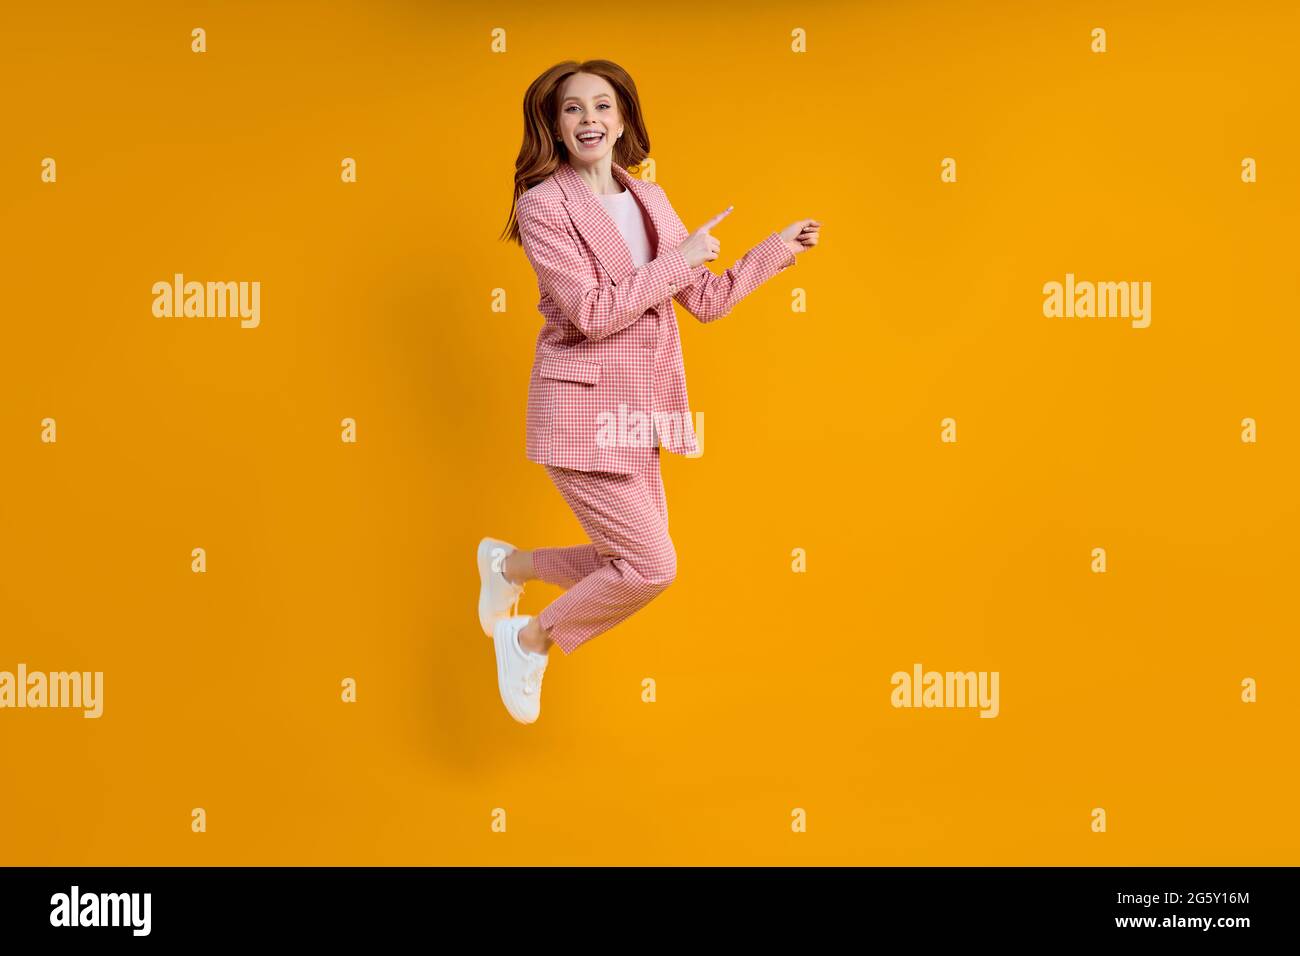 Femme d'affaires réussie en costume rose sautant doigt d'index sur le côté, isolé sur fond jaune, shopping. Portrait. Espace de copie pour publicité Banque D'Images